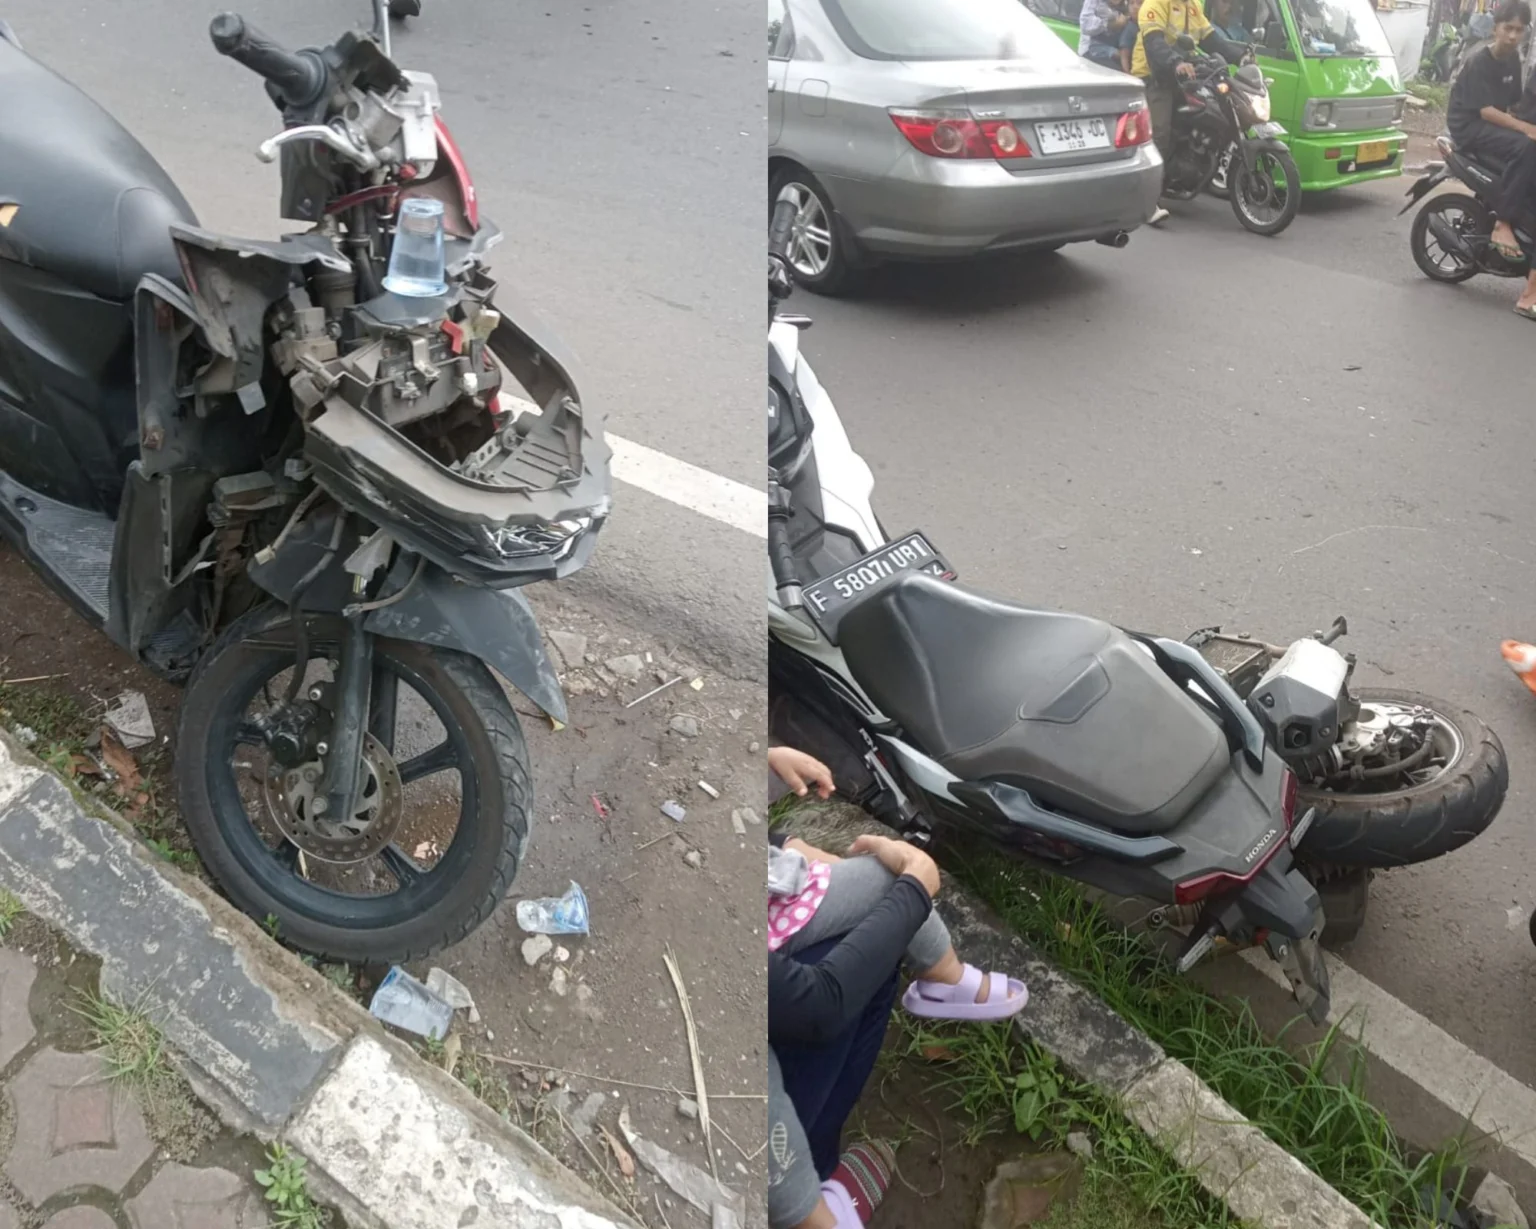 Kecelakaan Beruntun 3 Motor vs Mobil di Jalan KH Ahmad Sanusi Sukabumi, Ini Kronologisnya!